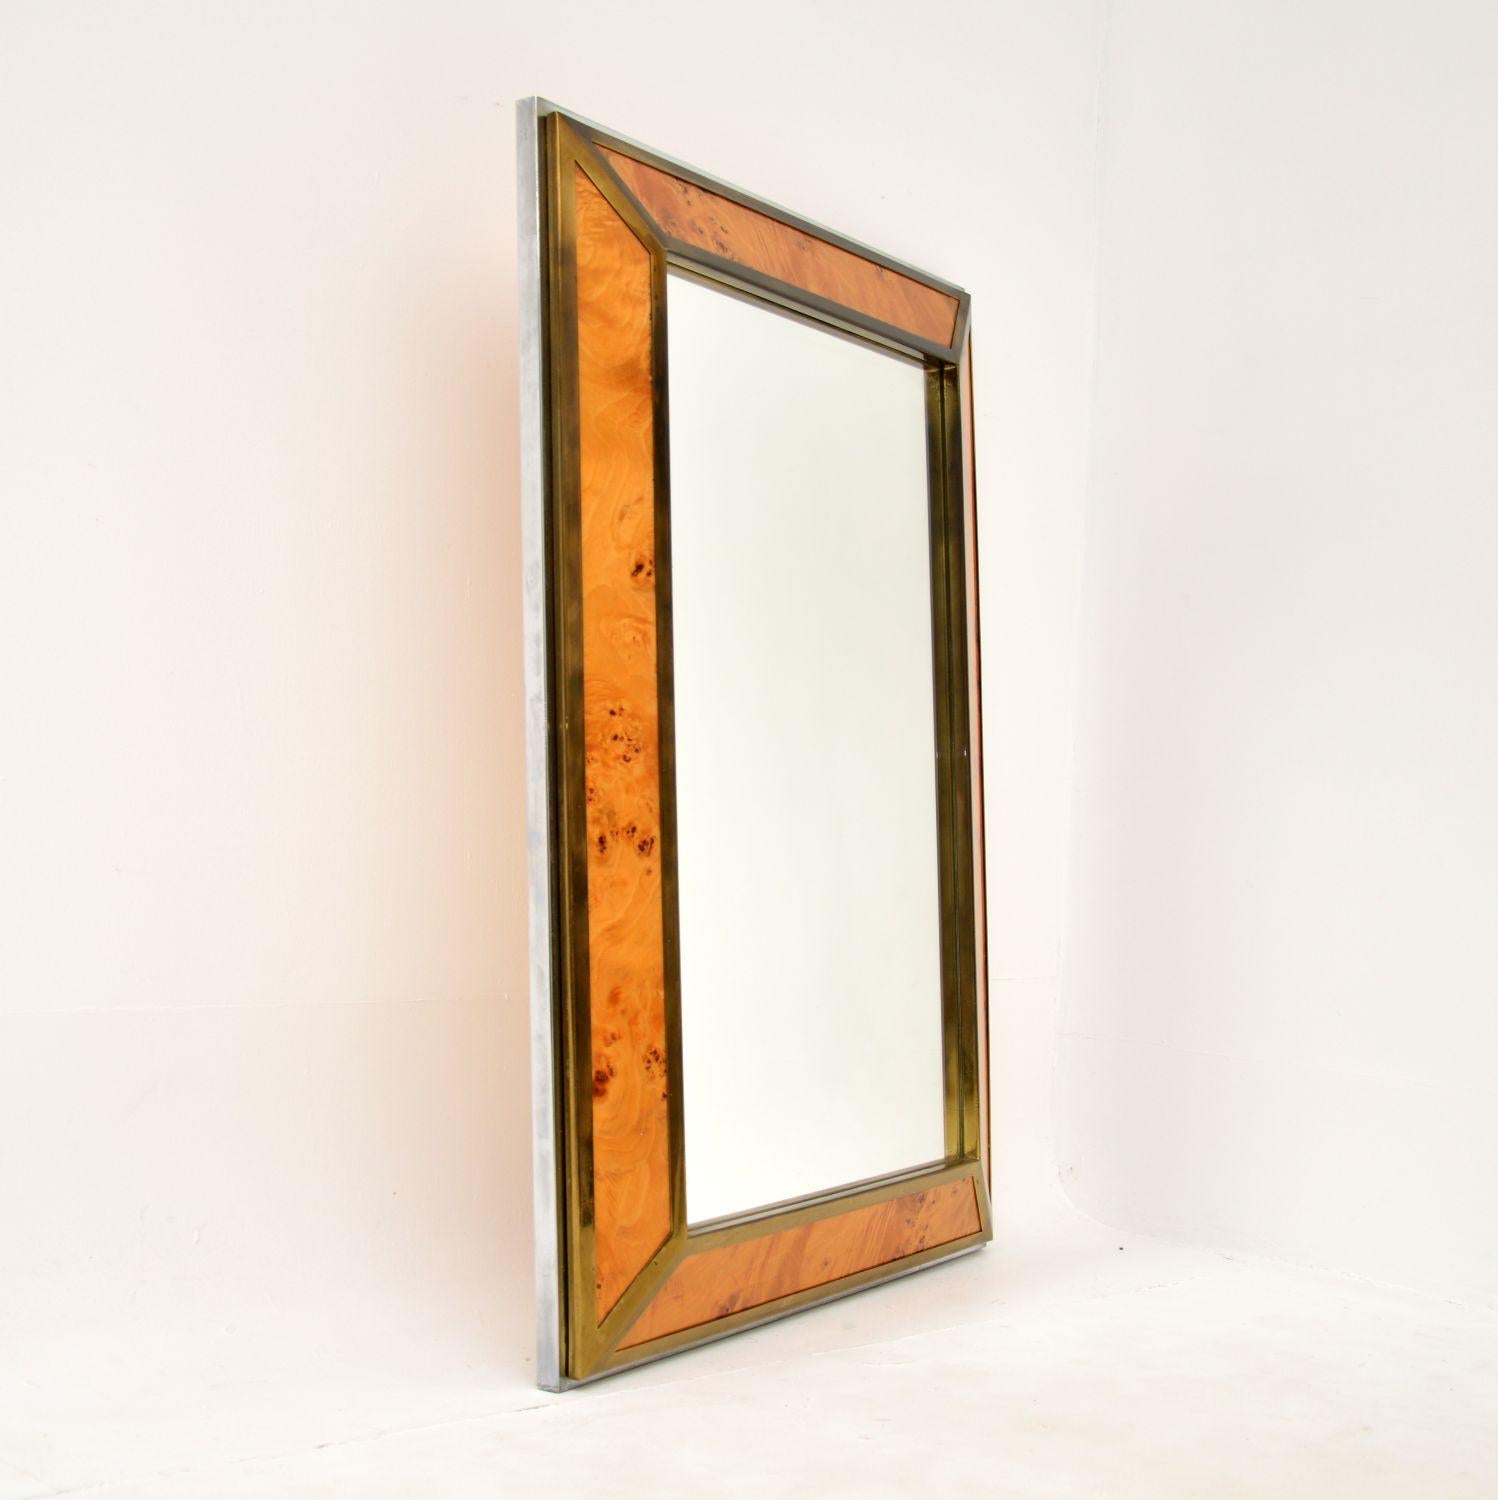 Ein äußerst stilvoller und gut gemachter italienischer Vintage-Spiegel aus den 1970er Jahren.

Der Rahmen ist von hervorragender Qualität und besteht aus Wurzelholz, massivem Messing und verchromtem Stahl. Die Vorderseite verjüngt sich nach außen